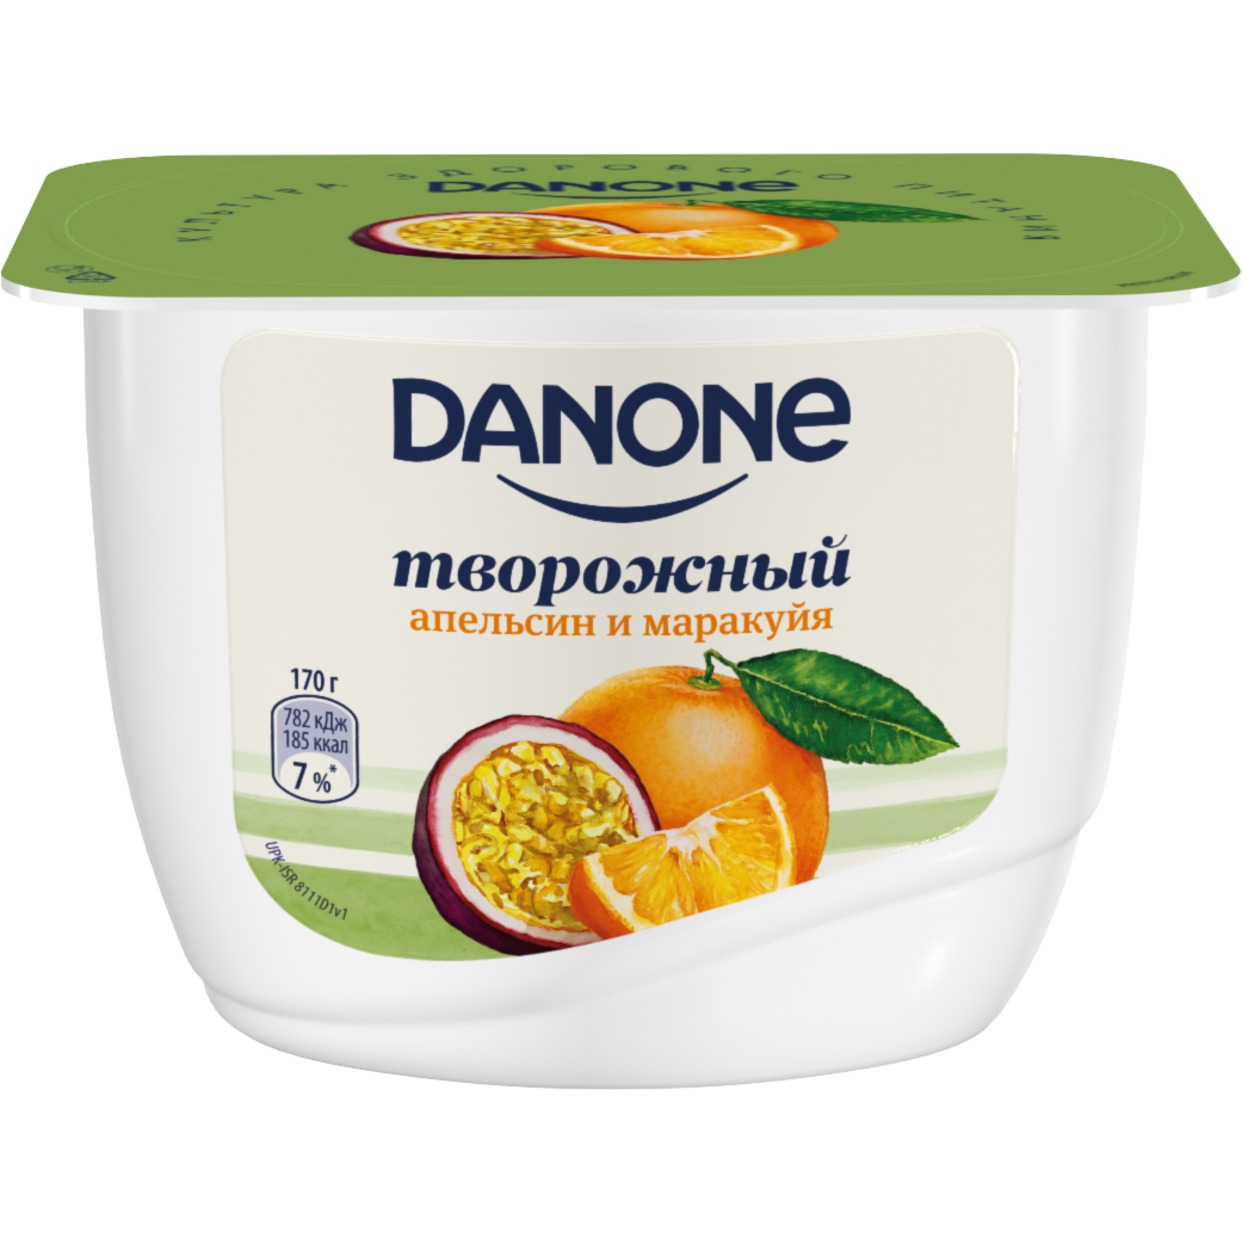 БЗМЖ Продукт творожный с апельсином и маракуйей «Данон», массовая доля жира 3,6 %, 170 гр по акции в Пятерочке